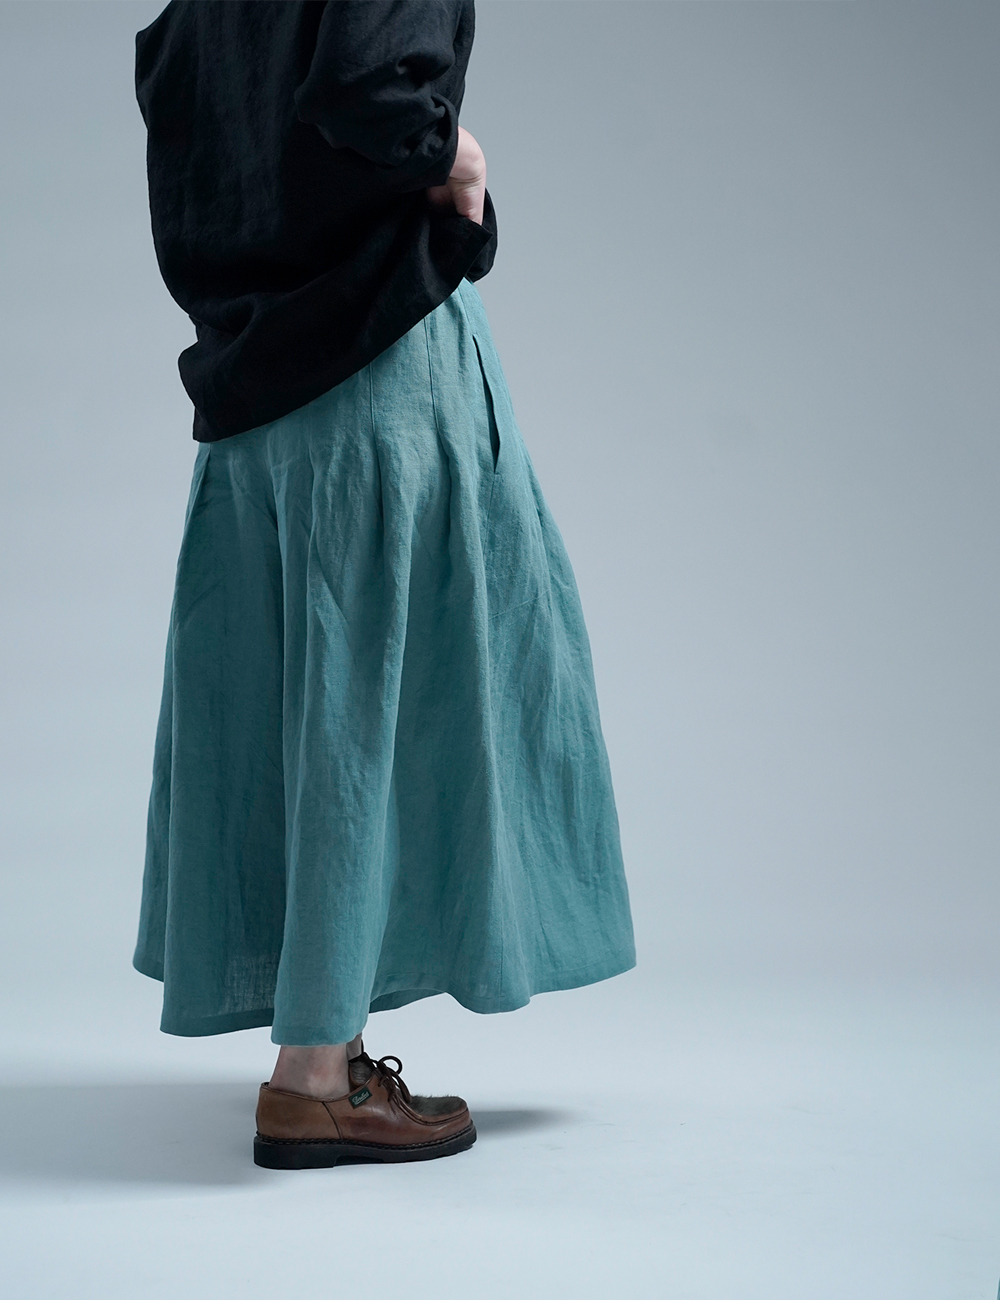 【見習い製作】Linen Pants 袴(はかま)パンツ / 白群(びゃくぐん) b002h-byg2